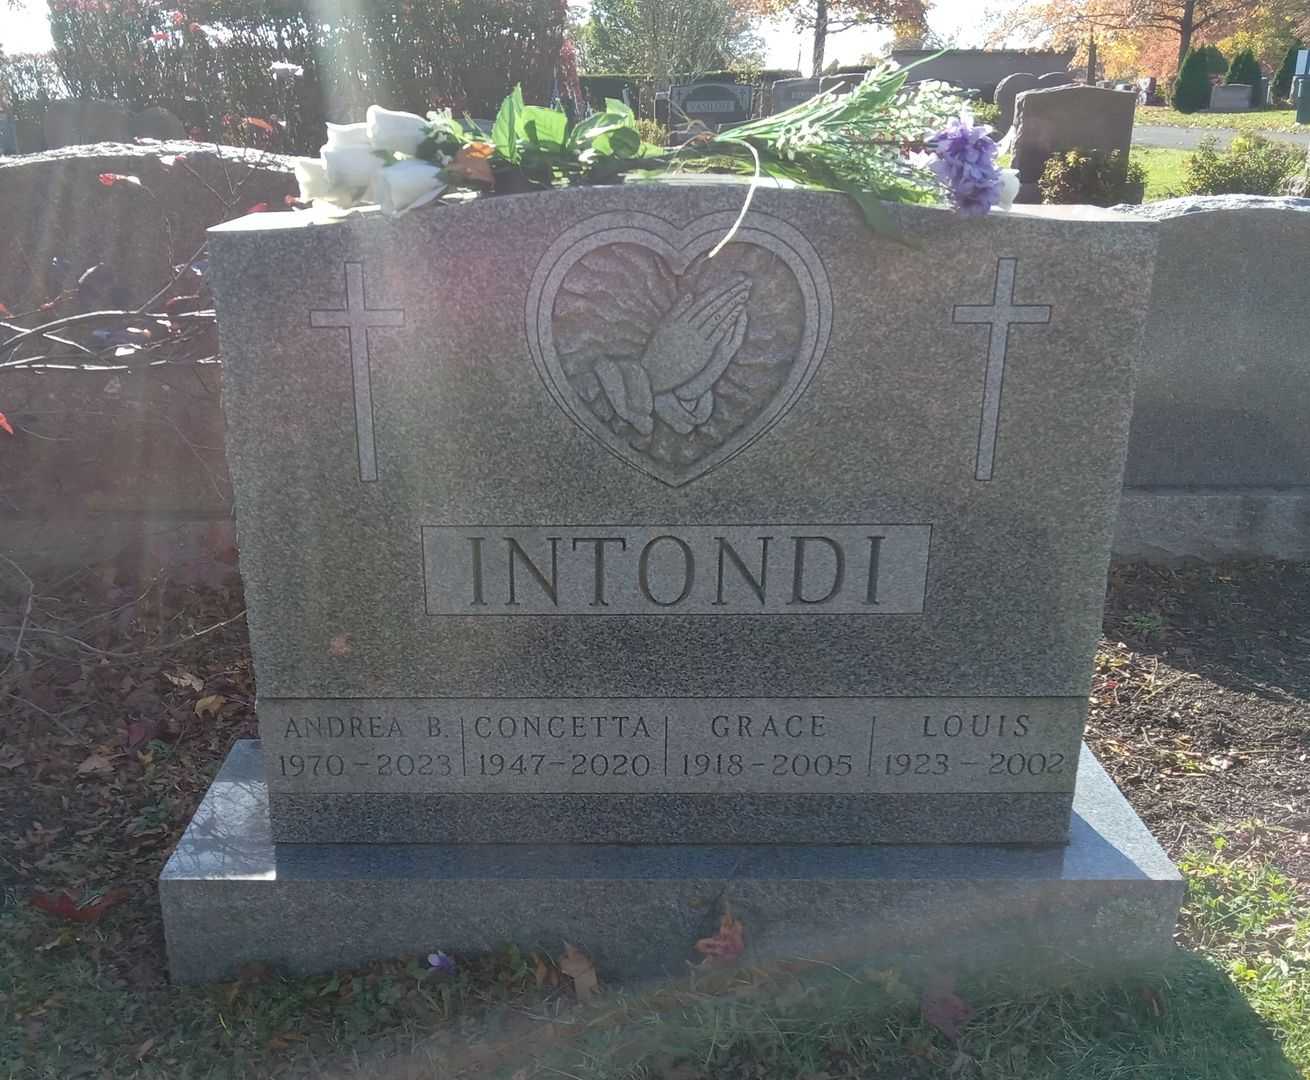 Concetta "Connie" Intondi's grave. Photo 1